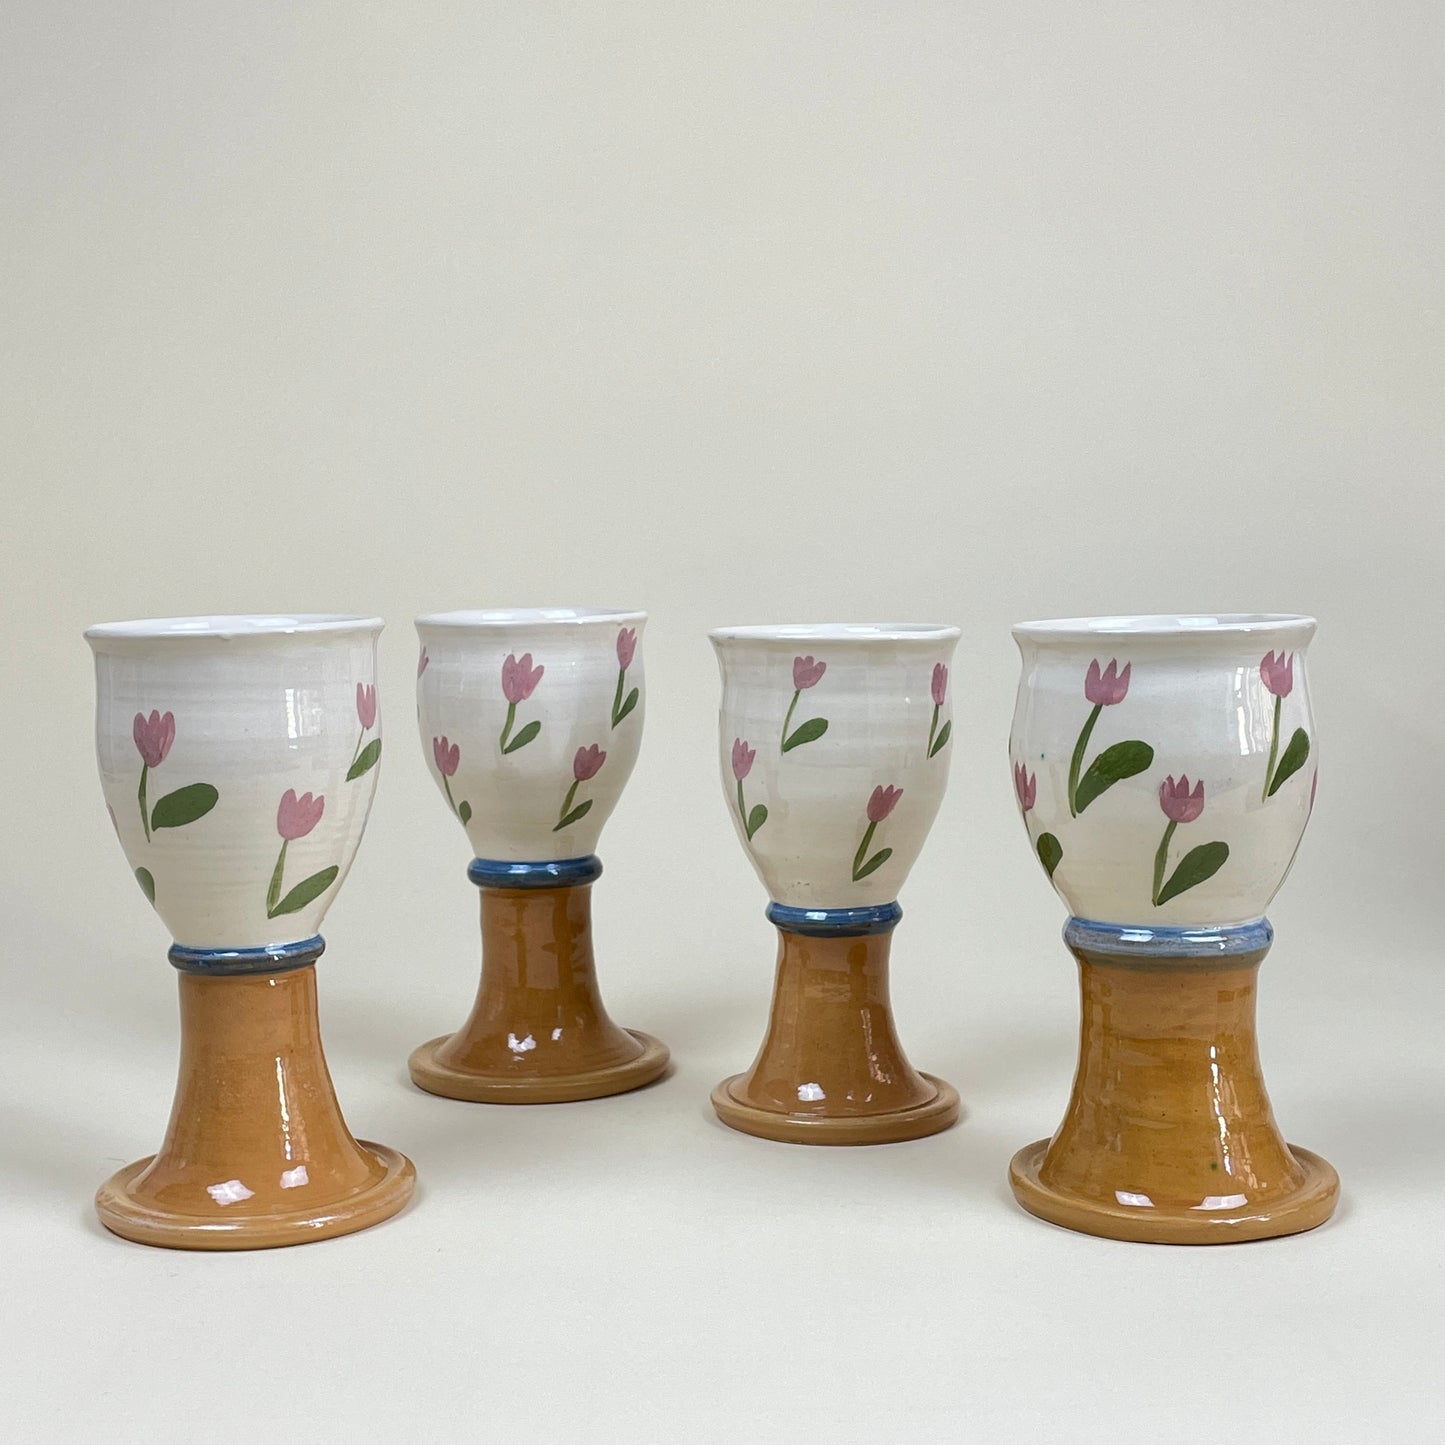 Ceramic wine glasses (4)